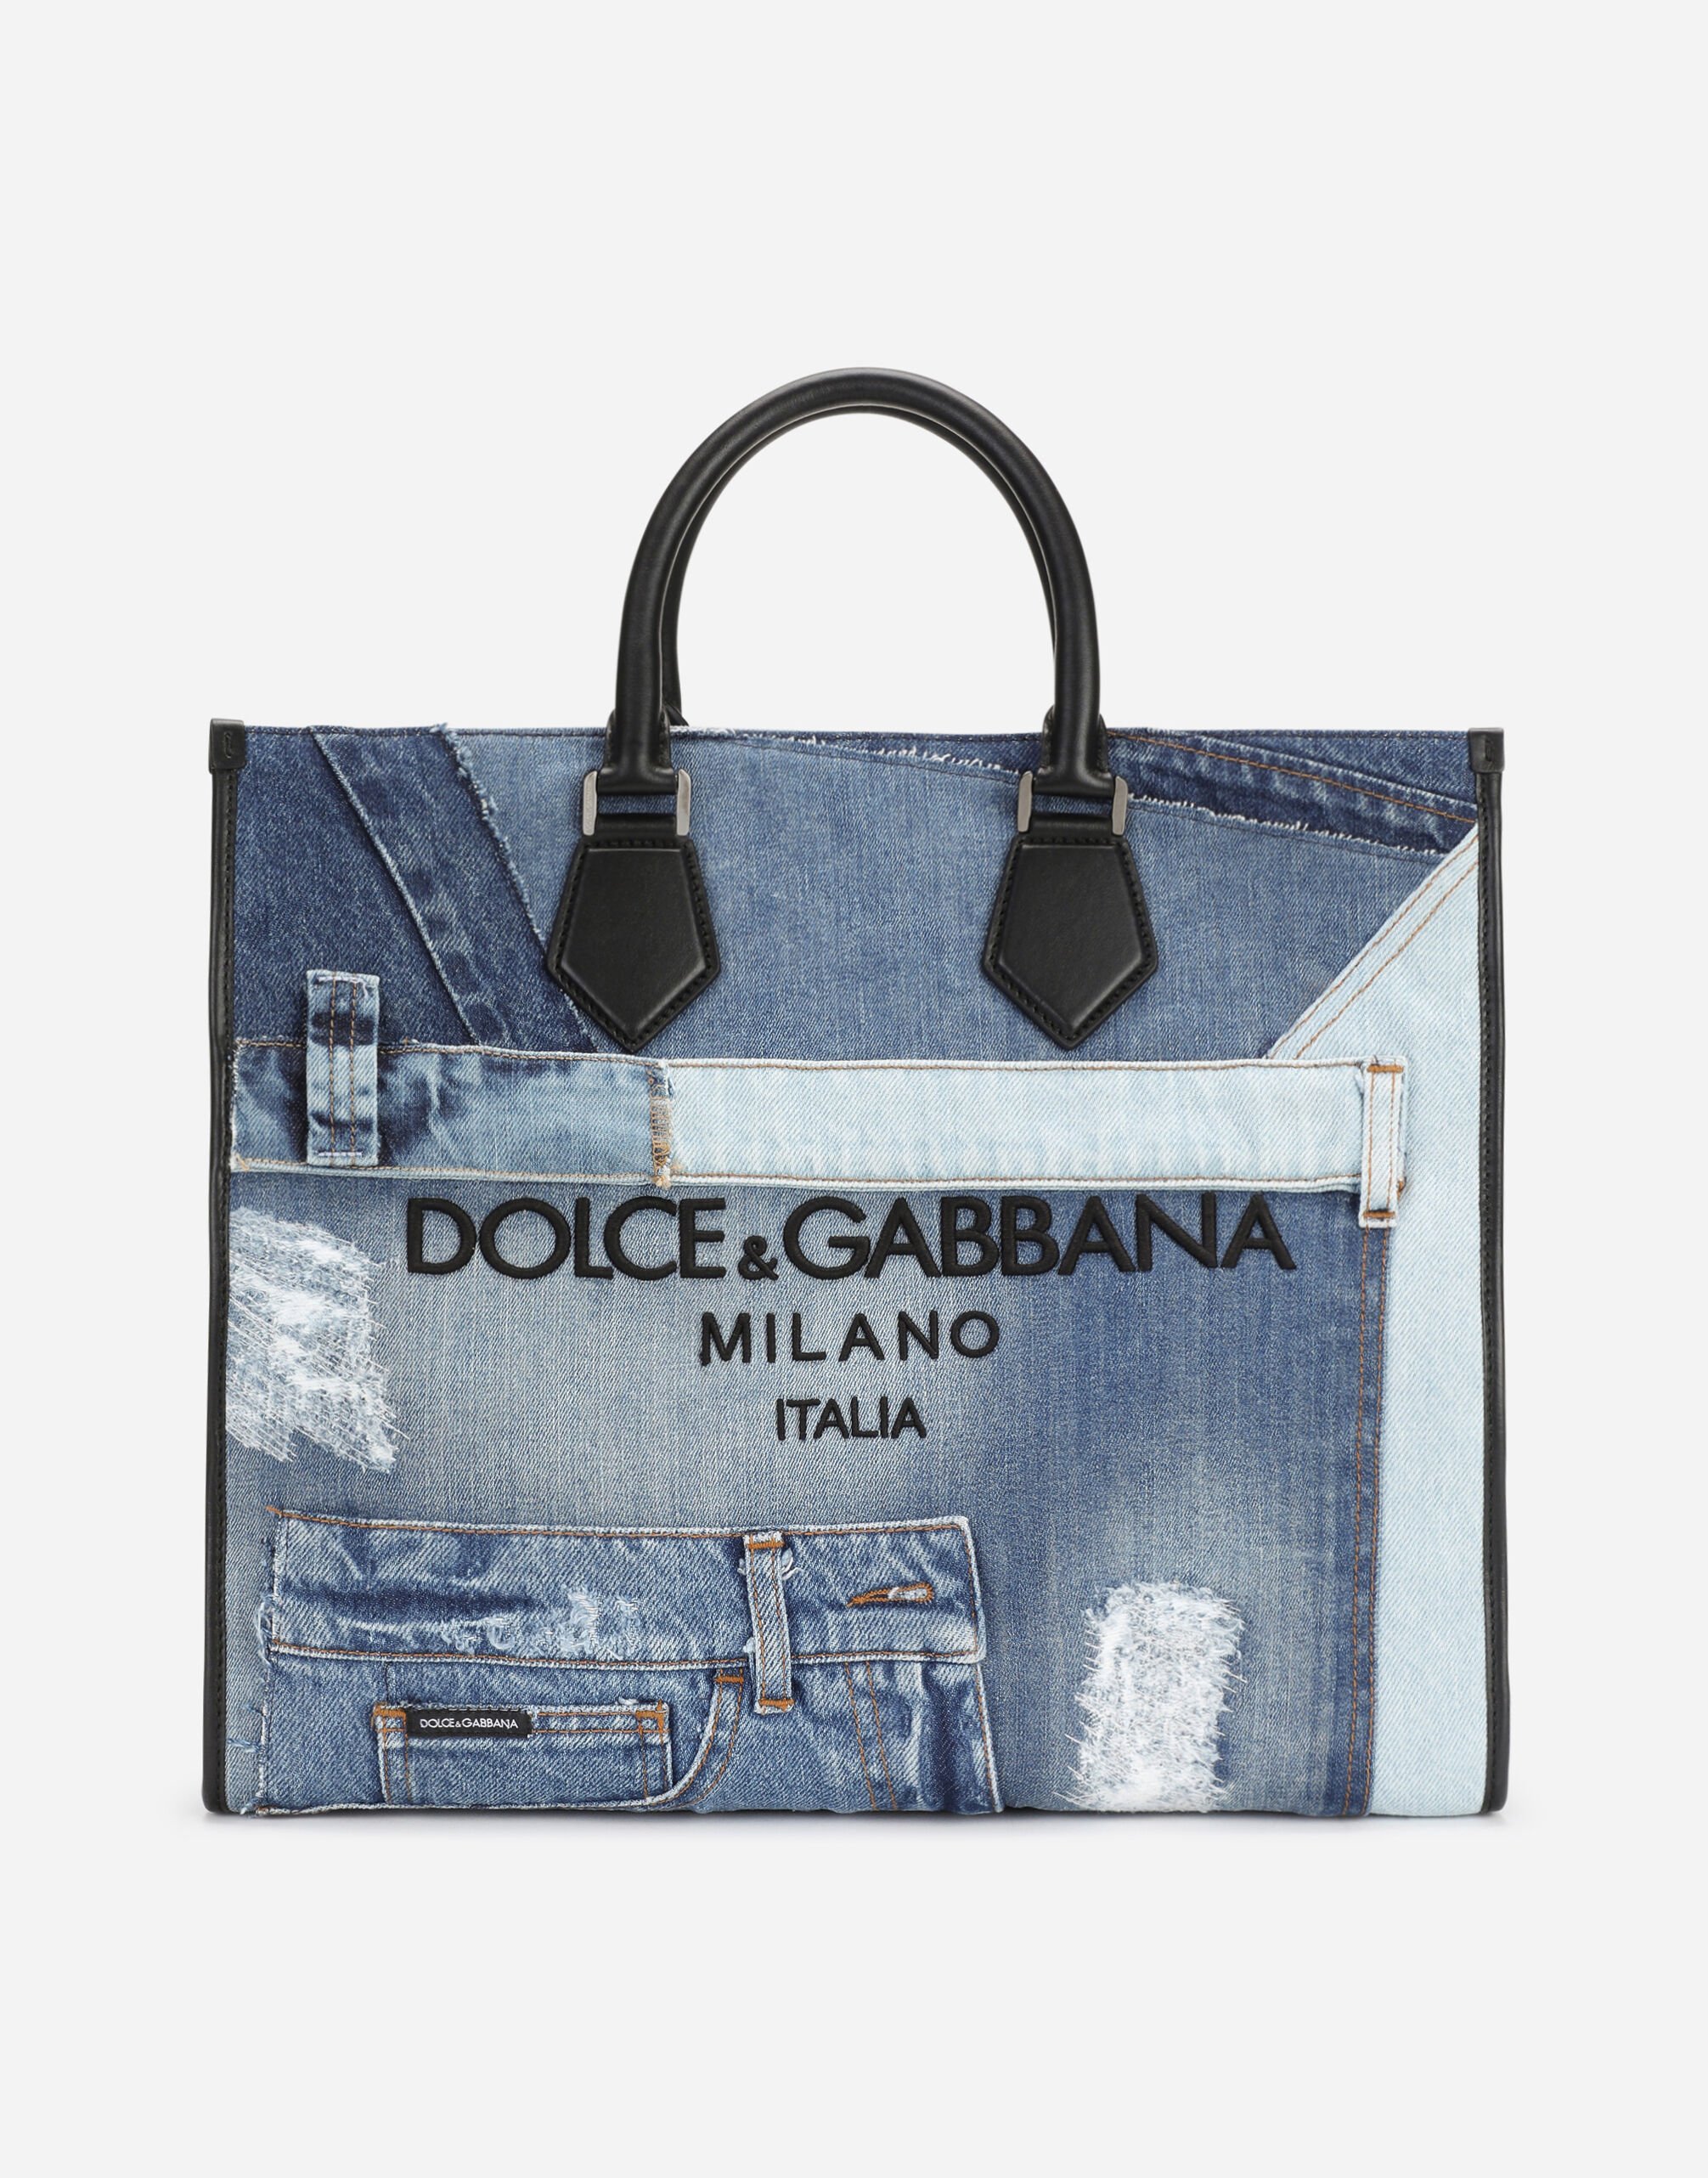 Dolce & Gabbana Original Denim Leather Briefcase | Leather briefcase,  Leather, Dolce and gabbana